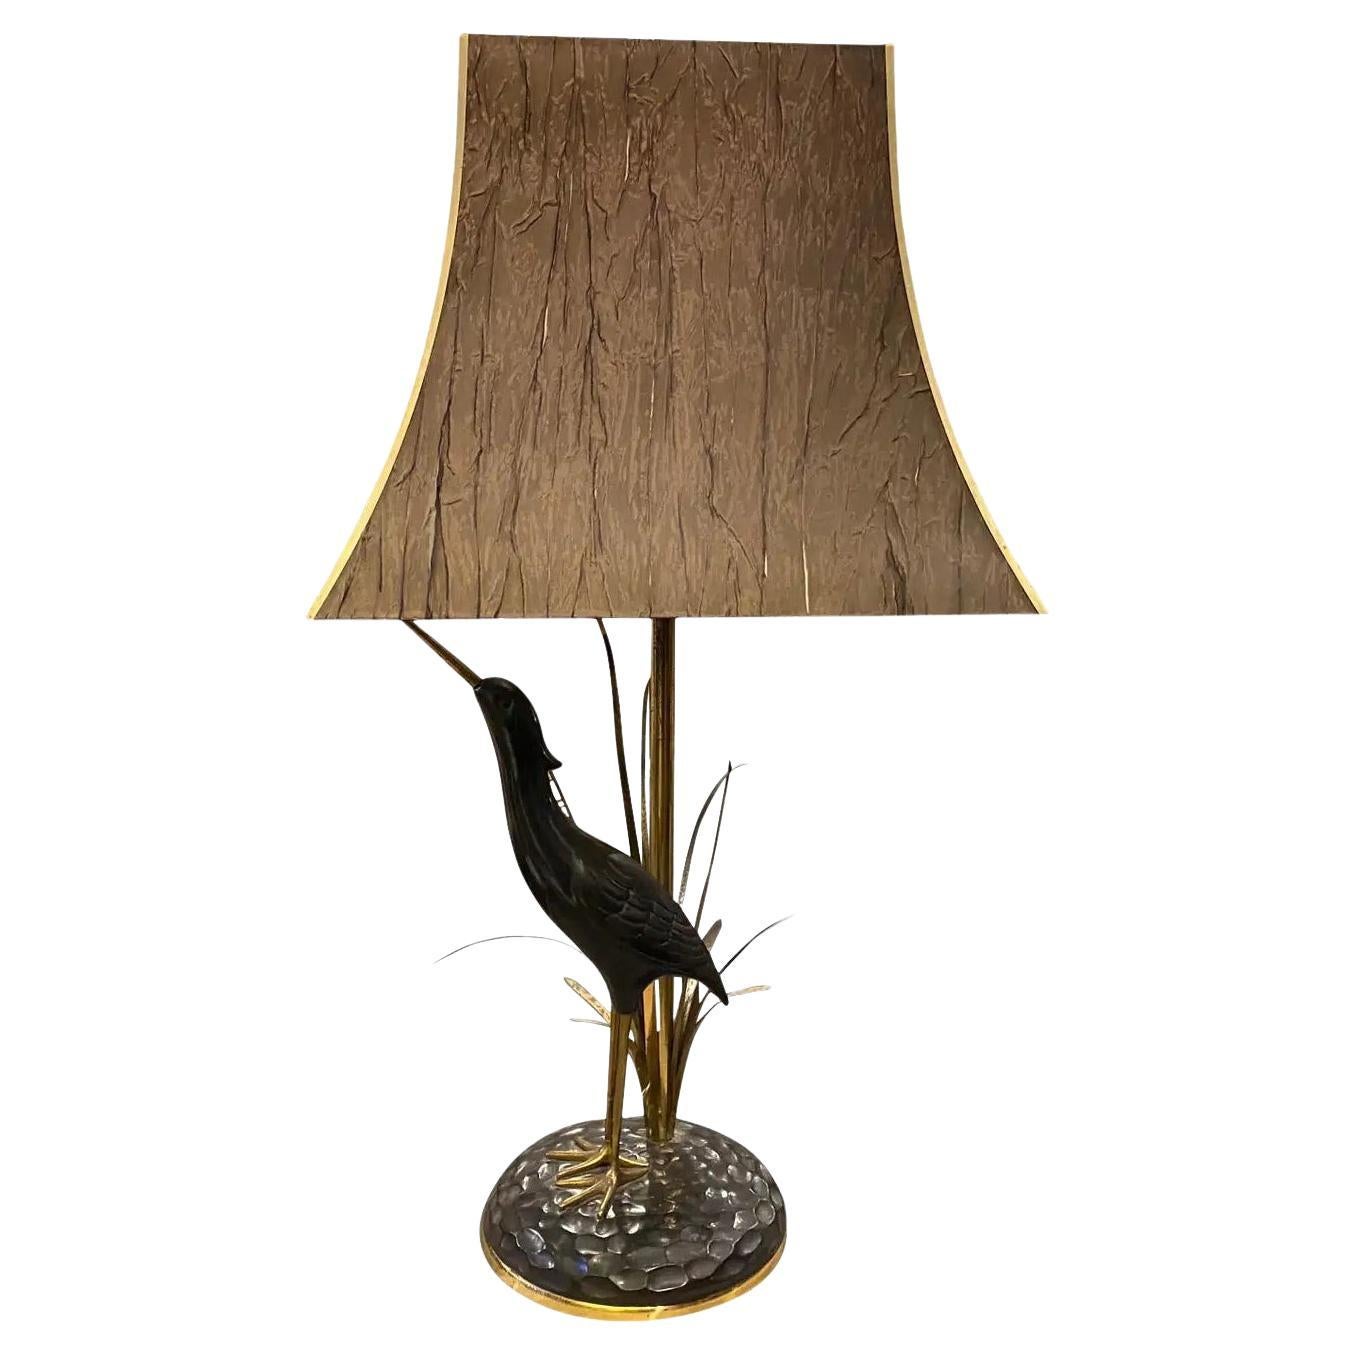 1950s Lanciotto Galeotti Mid-Century Modern Brass Italian Table Lamp